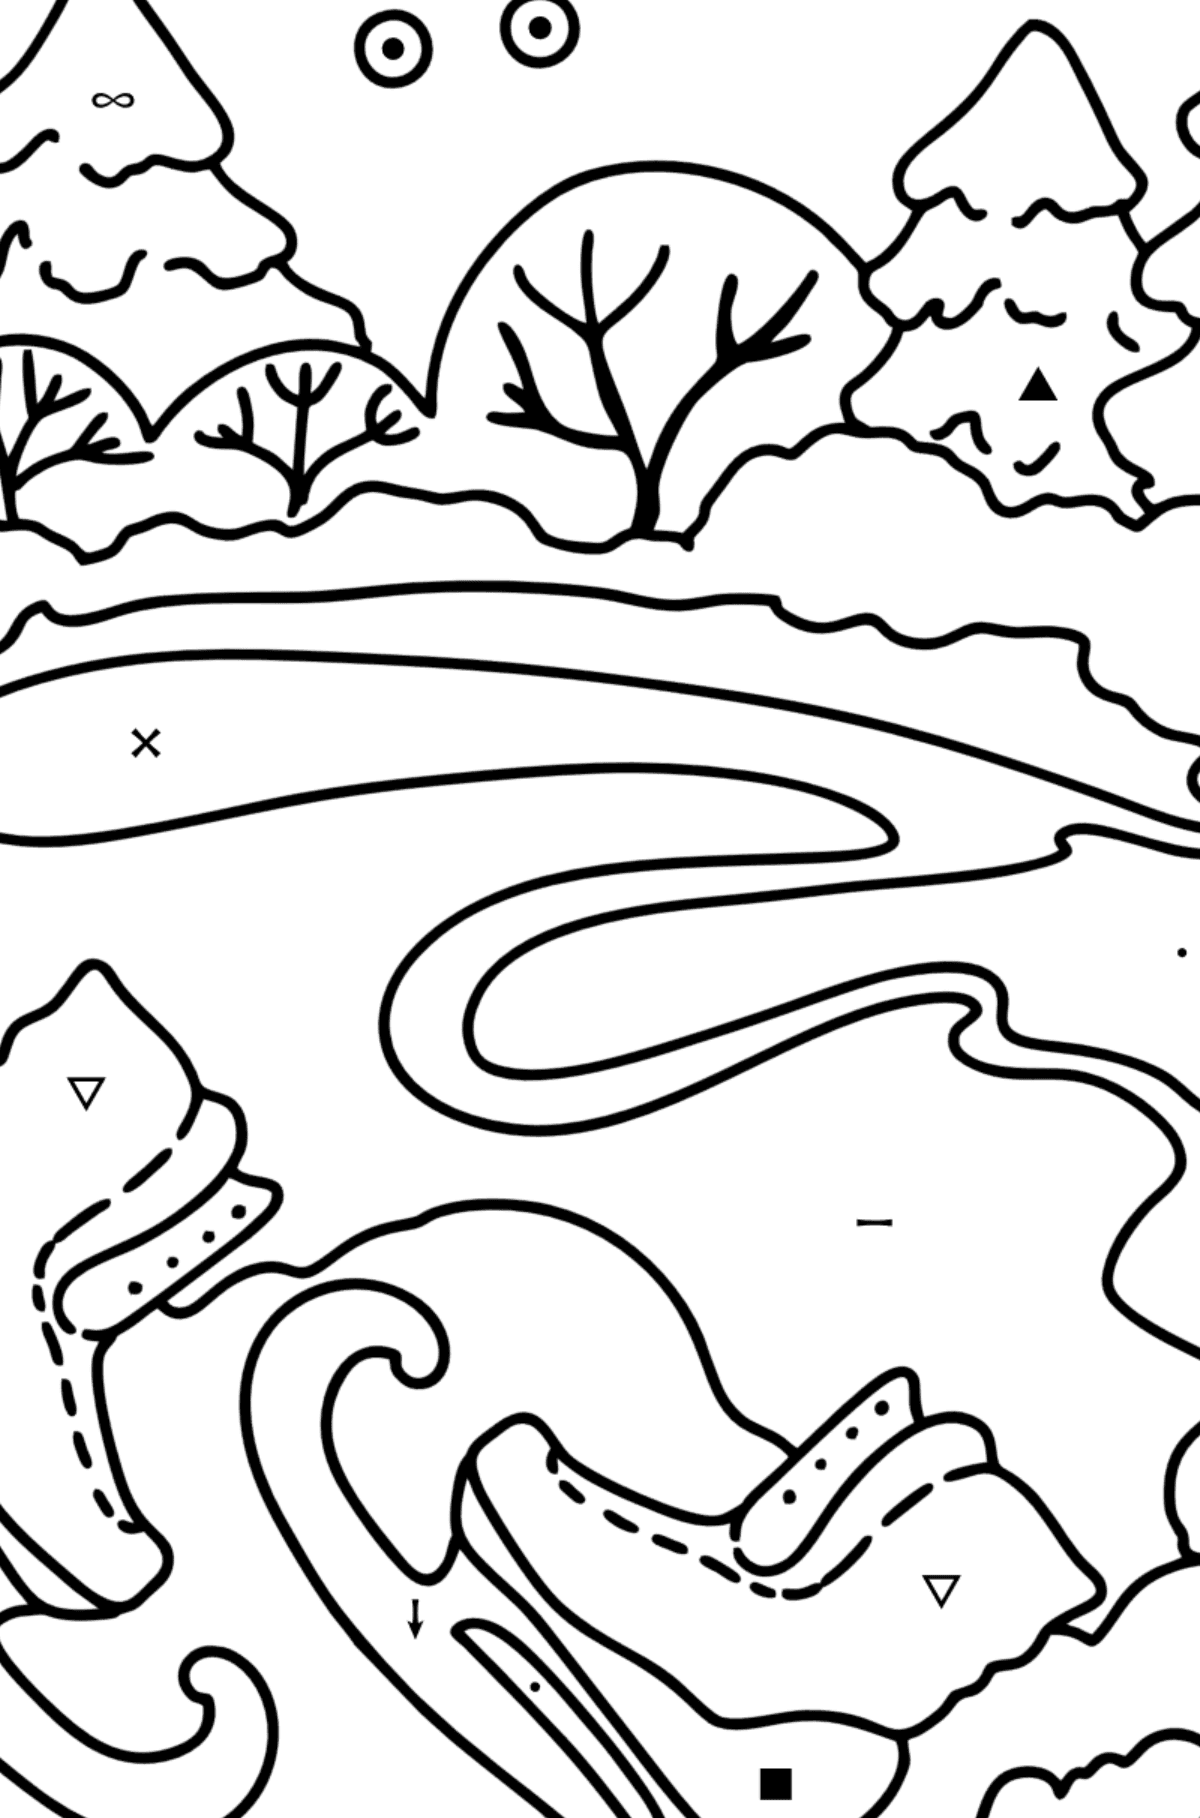 Desenho para colorir - Inverno e patins - Colorir por Símbolos para Crianças